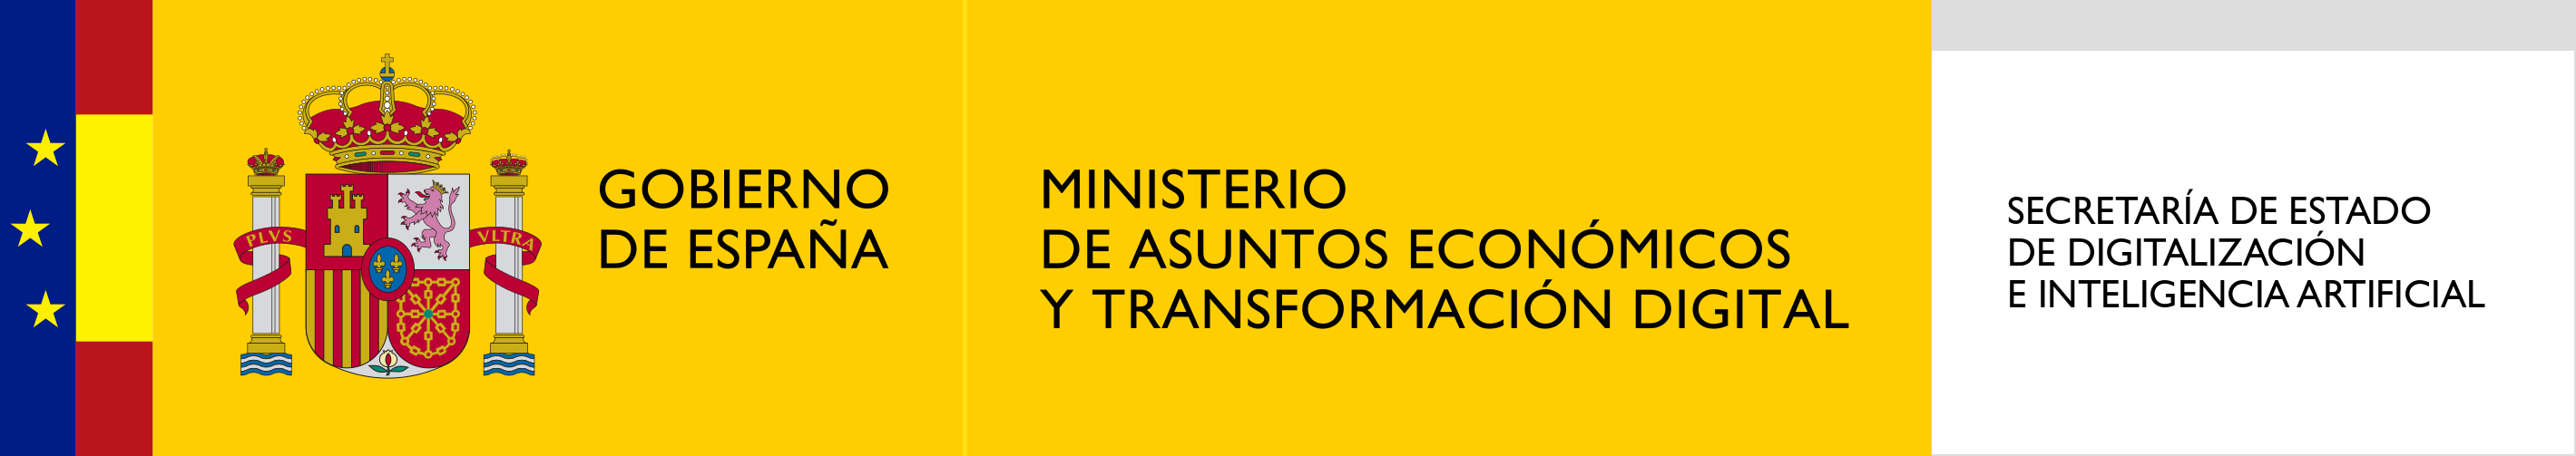 Logotipo_de_la_Secretaría_de_Estado_de_Digitalización_e_Inteligencia_Artificial